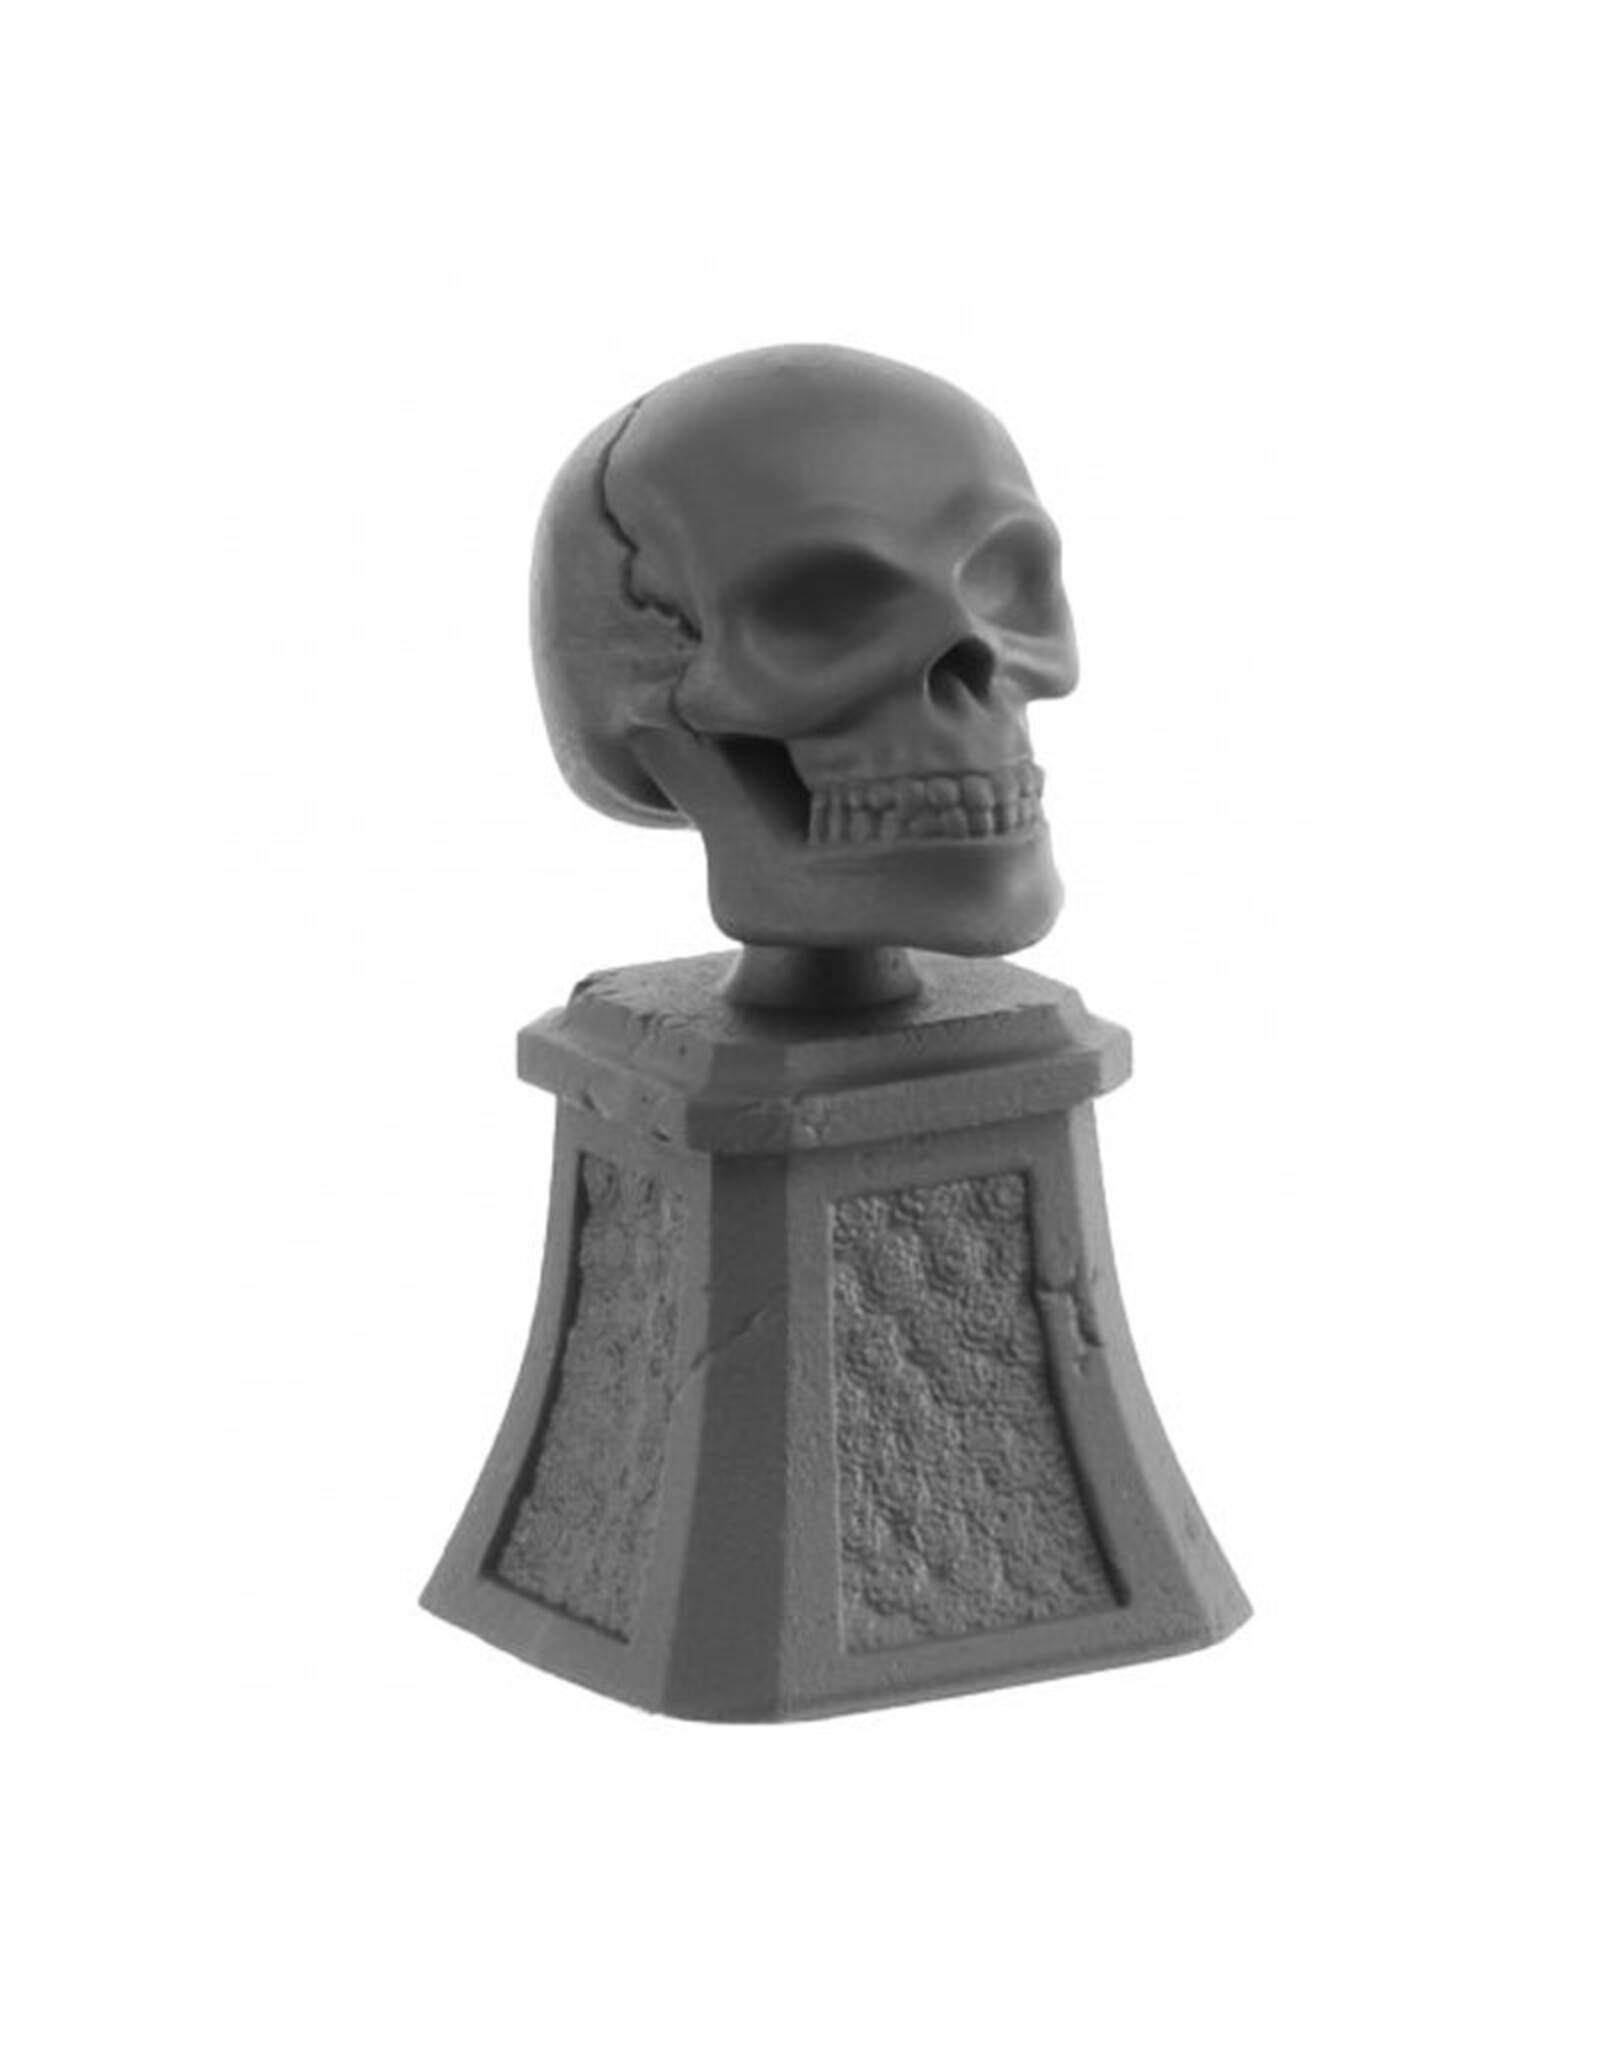 Reaper Reaper Minis: Sugar Skull and Plinth #01689